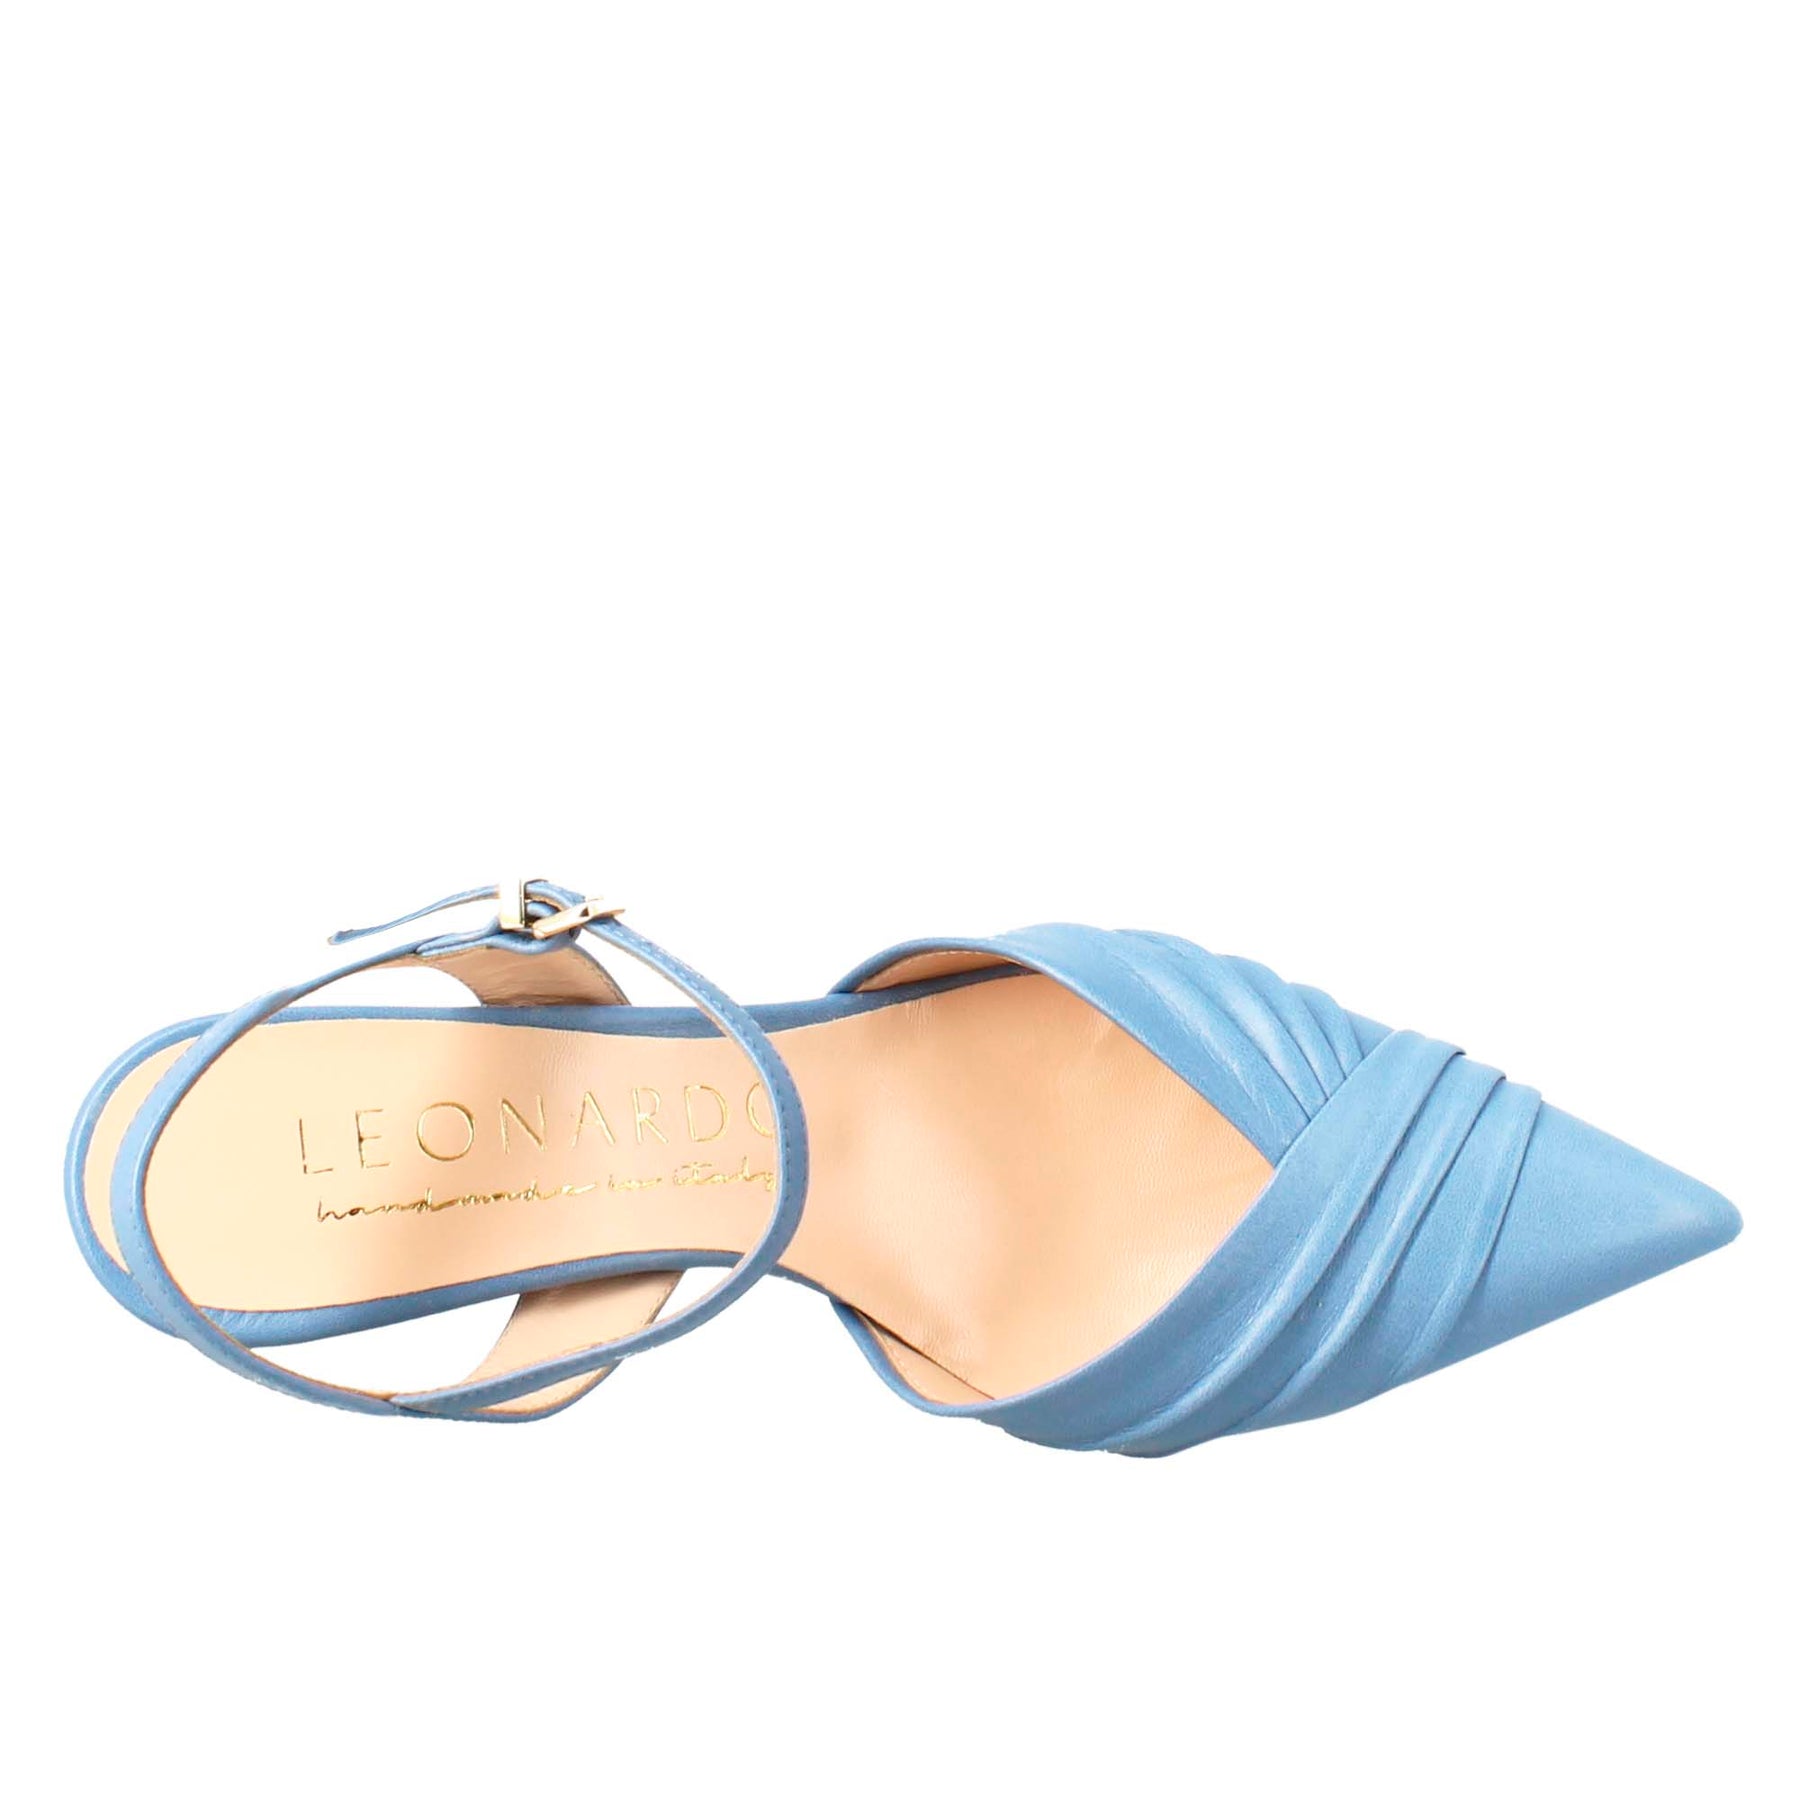 Sandalo chiuso da donna a punta in pelle plissè colore celeste con tacco alto